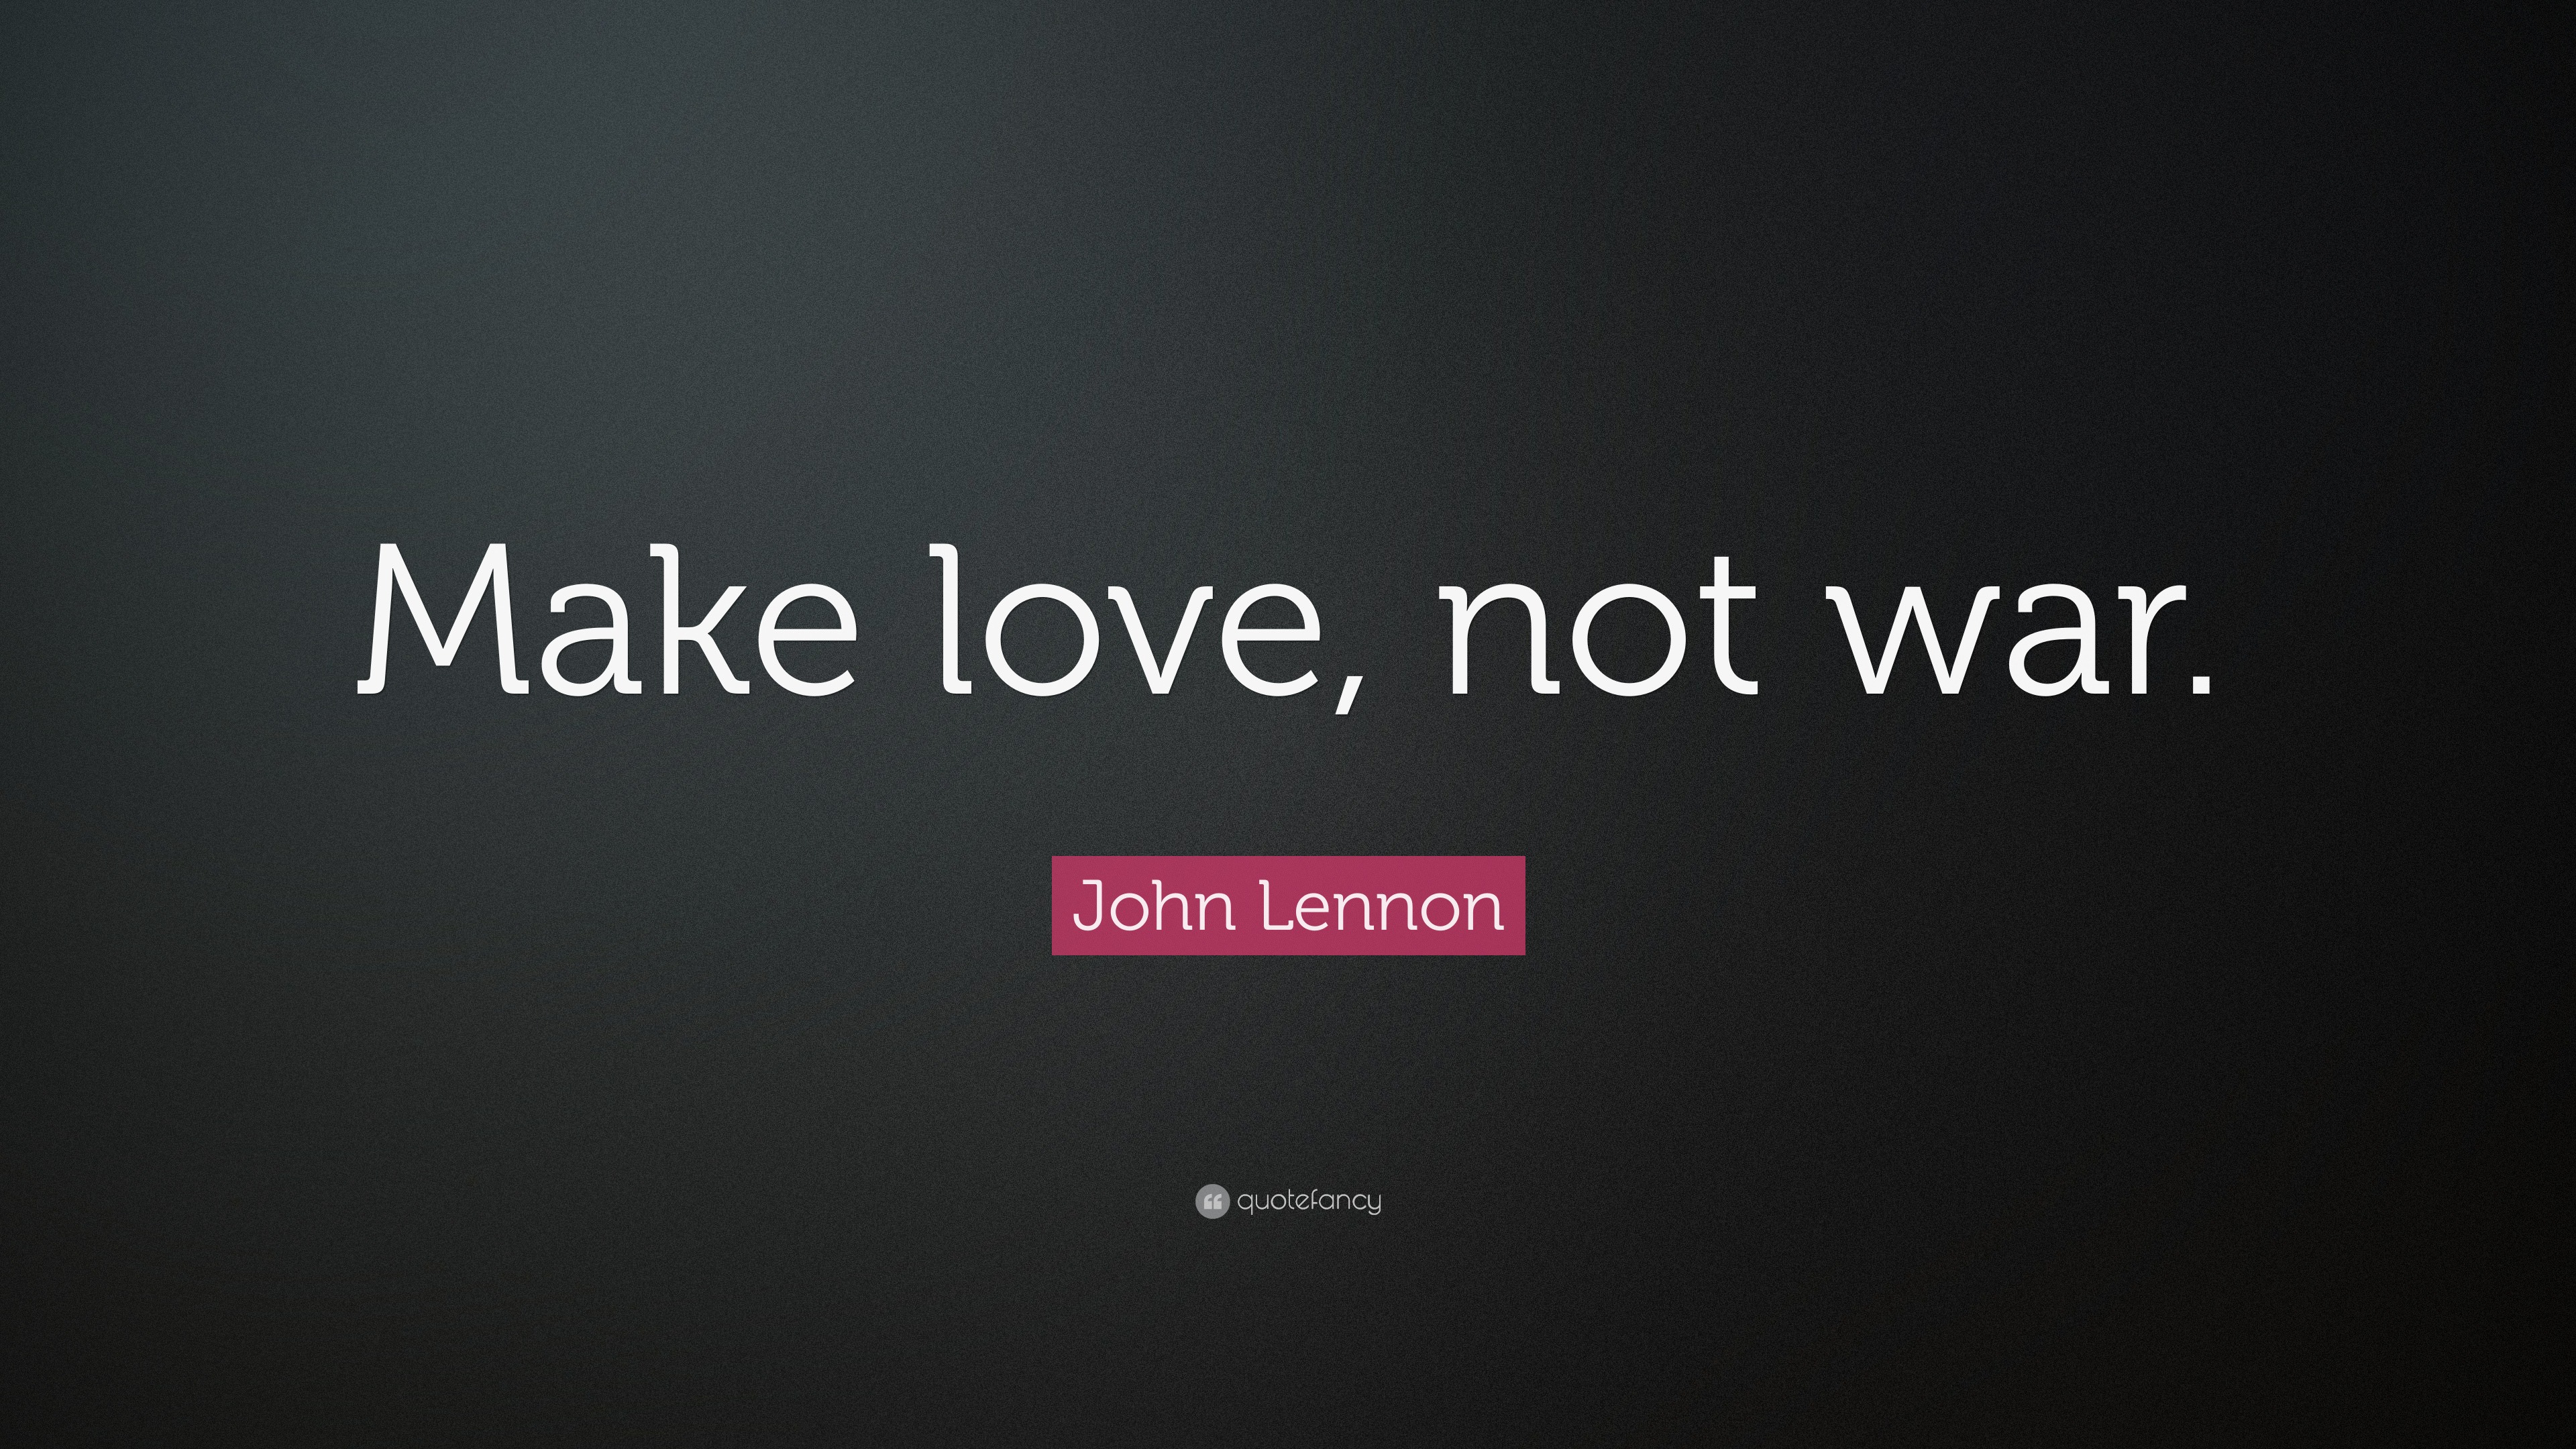 John Lennon Quote: “Make Love, Not War.”